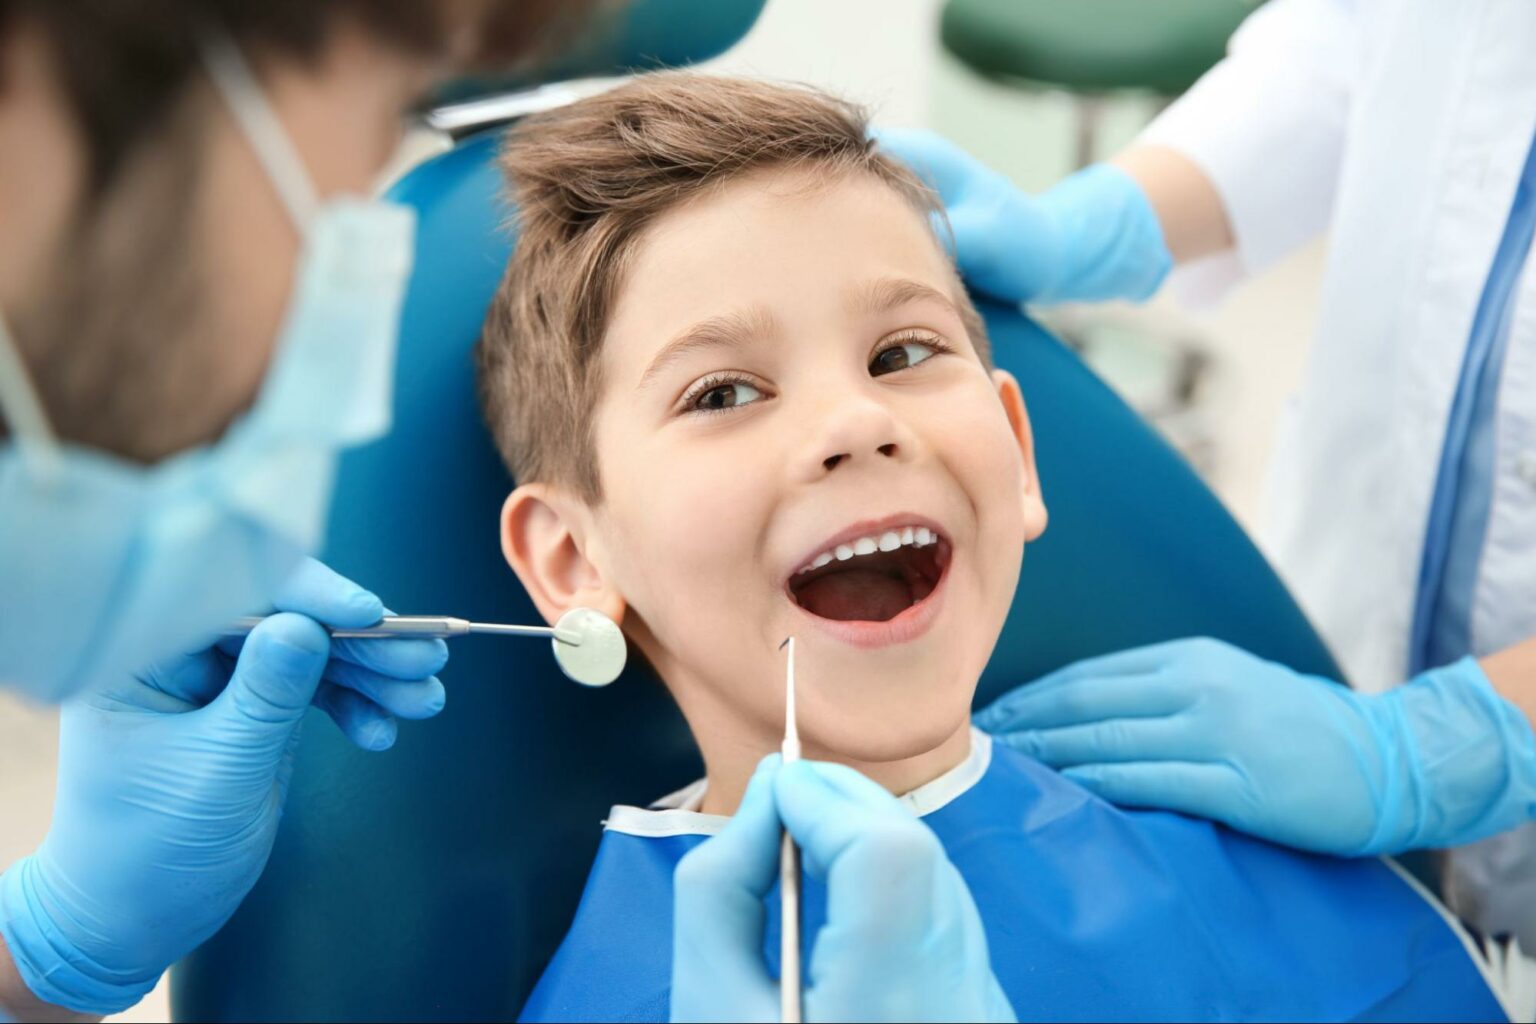 Children’s Dental Health Guide